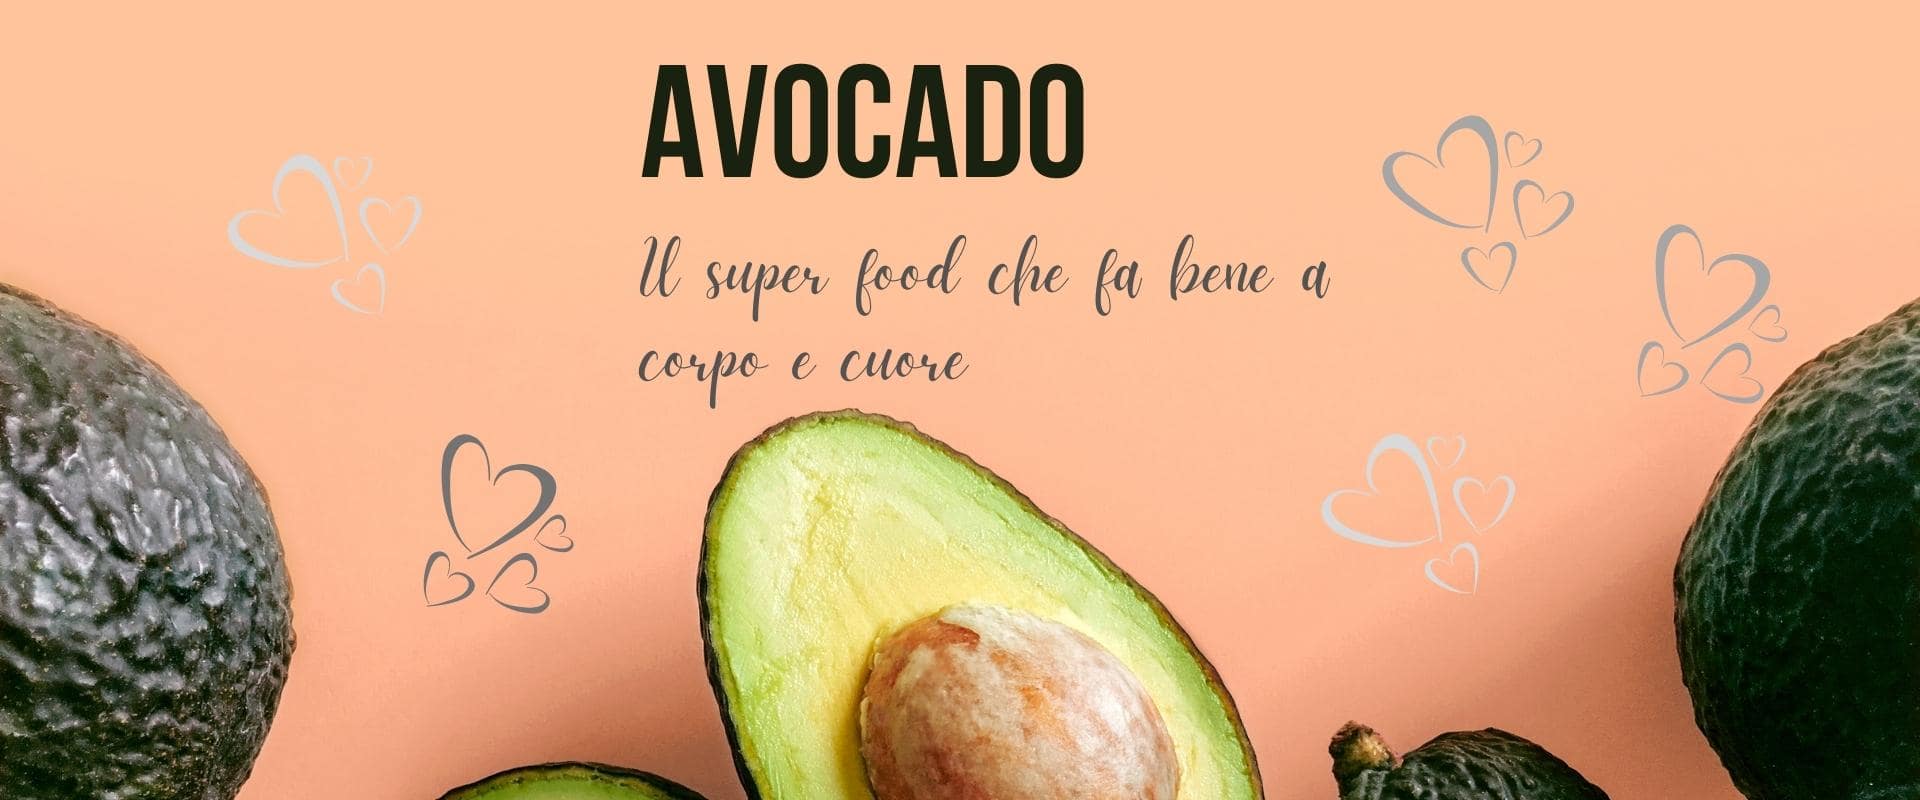 L’avocado, il super-food che fa bene a corpo e cuore